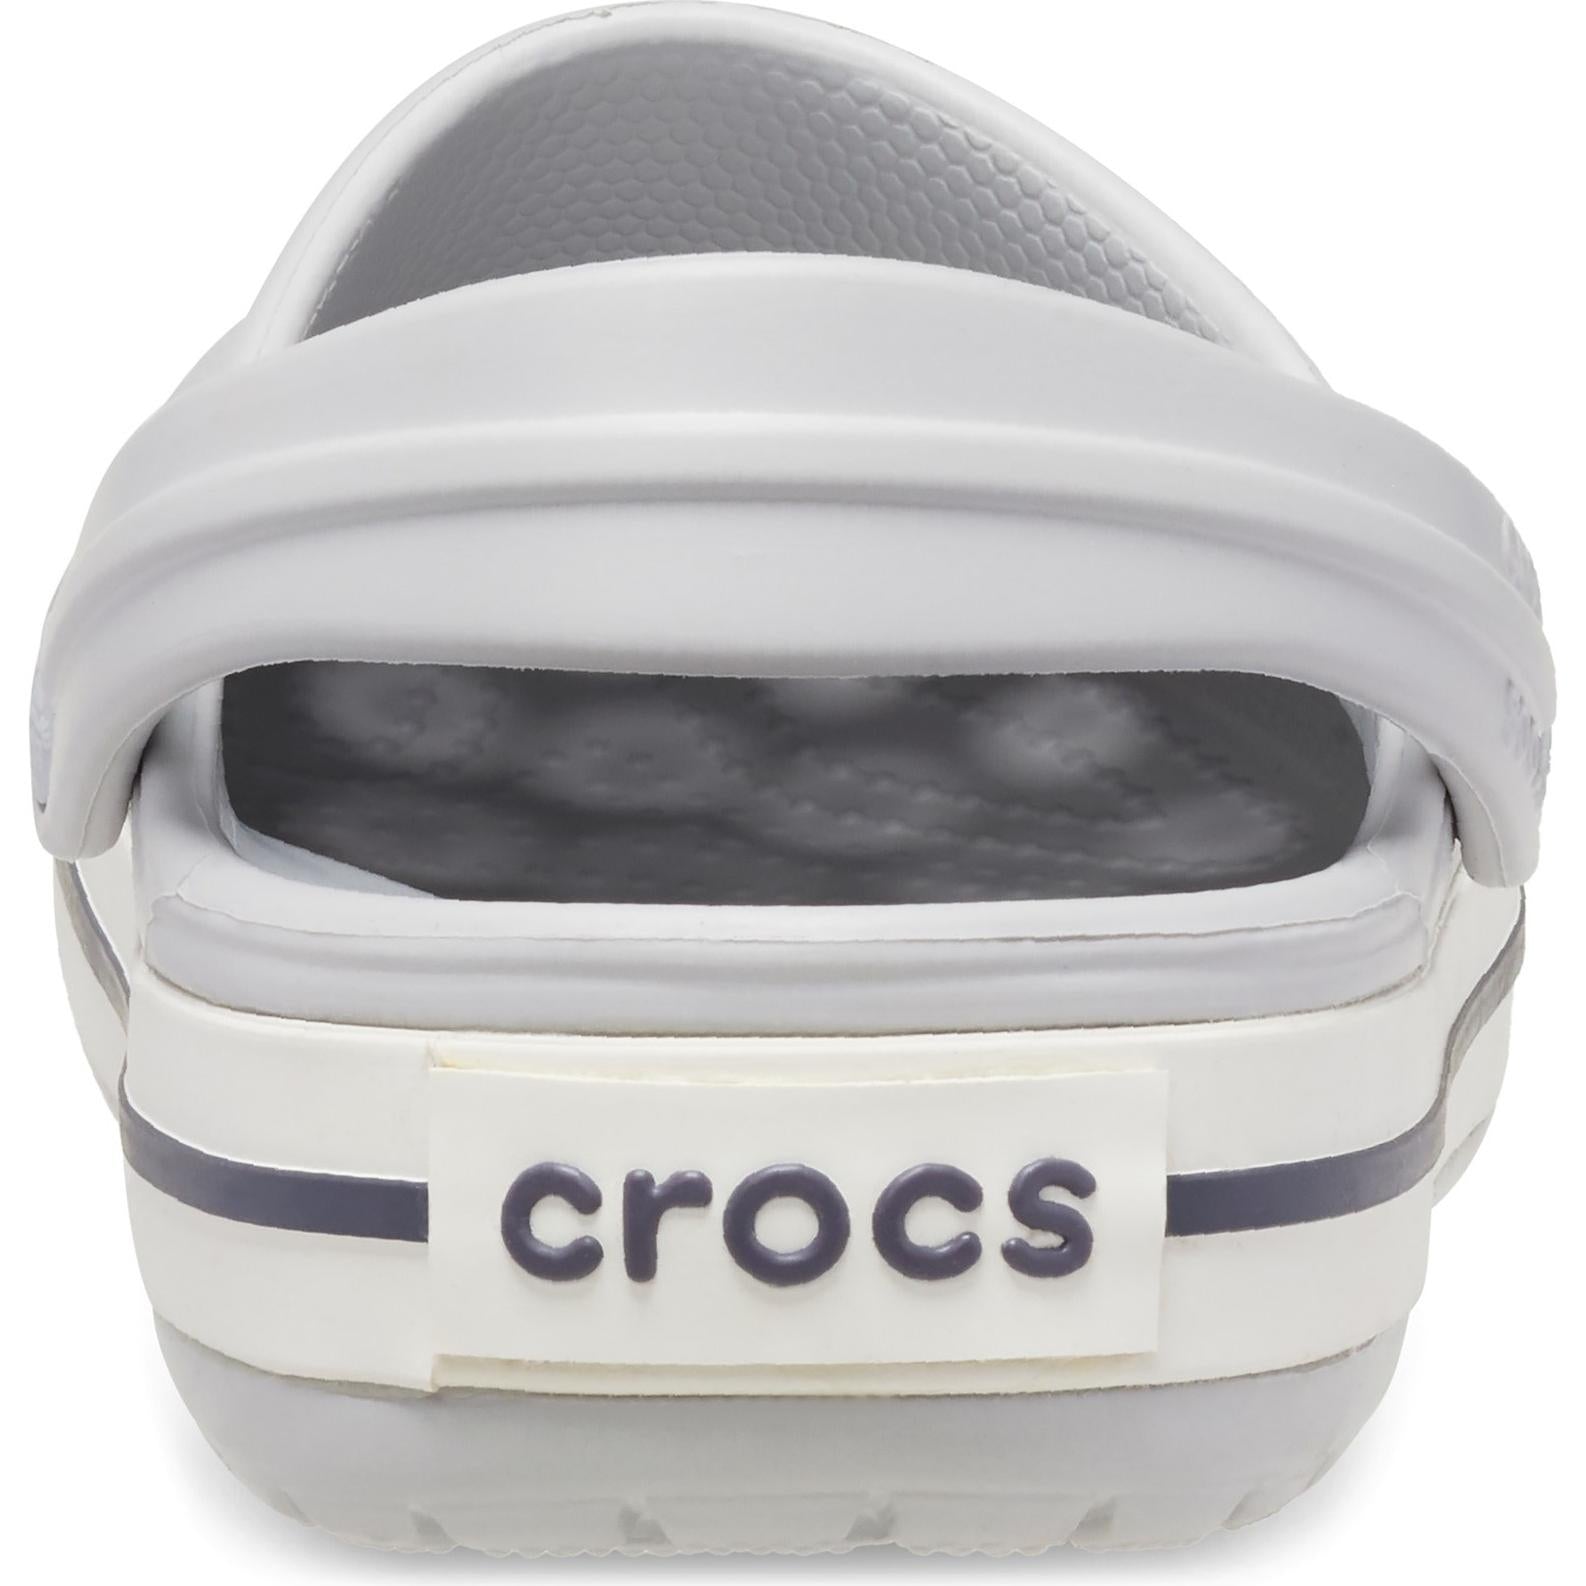 Crocs Crocband Clog Sandals